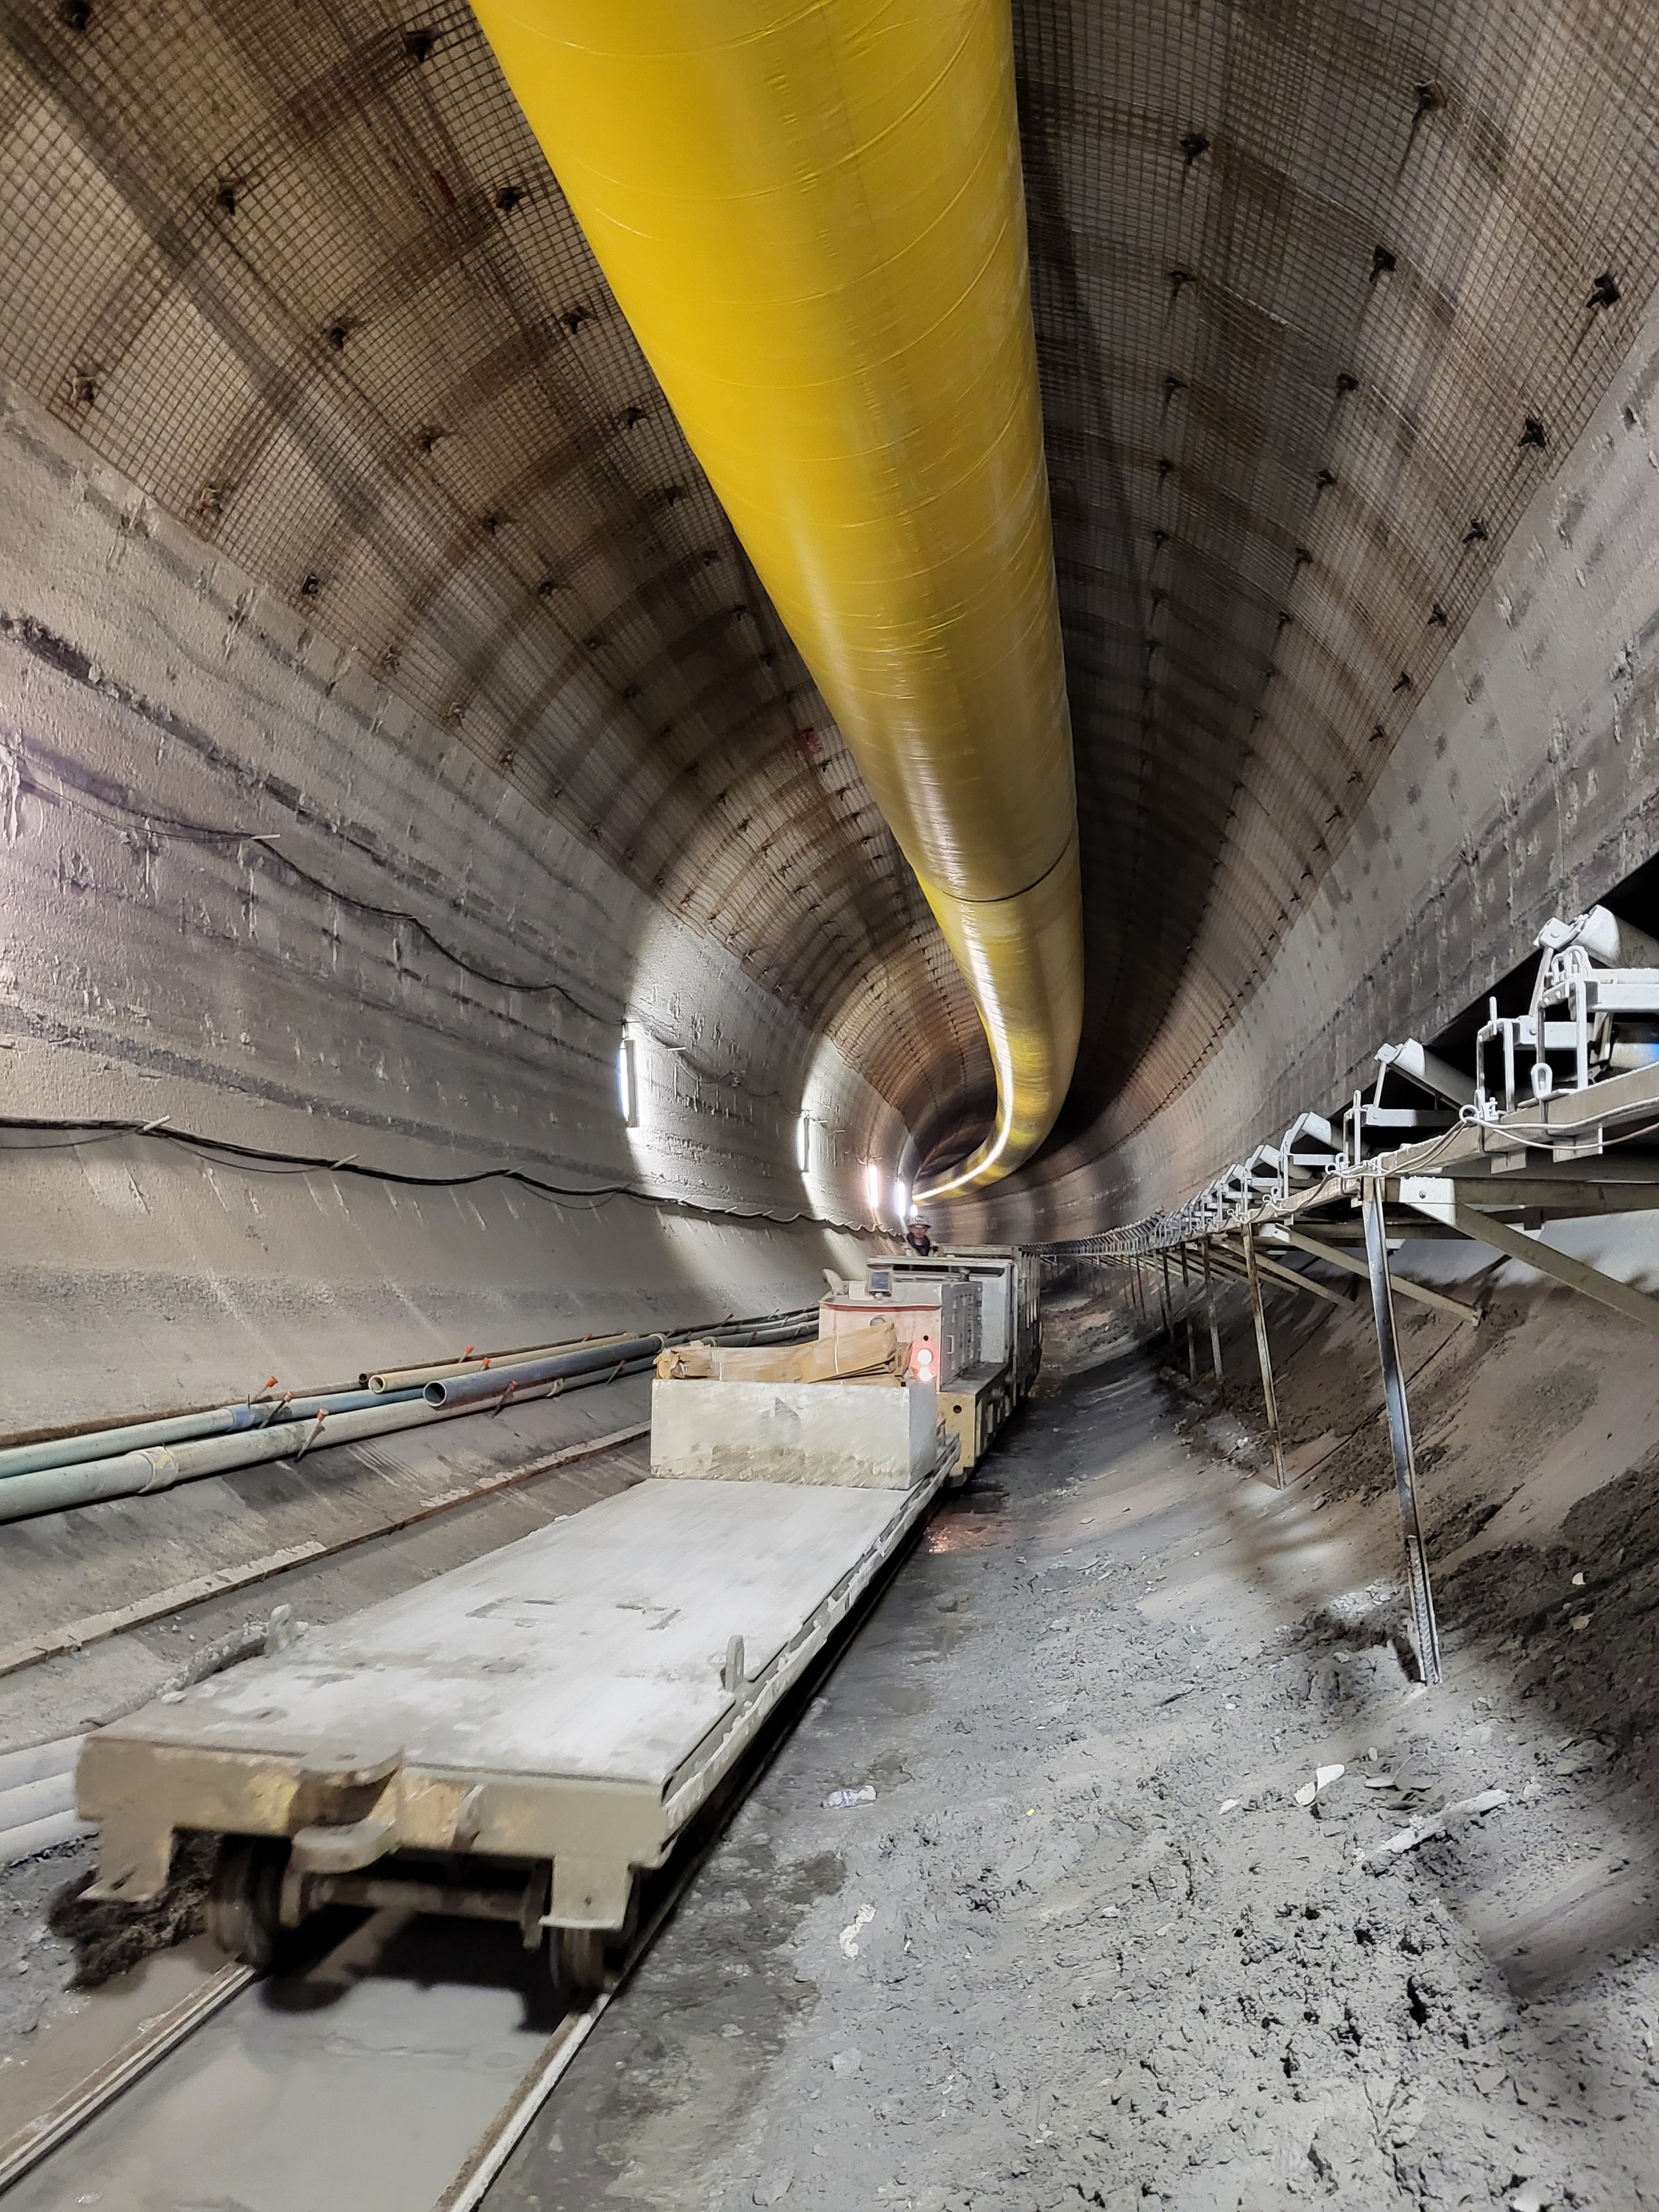 February 2022 - 32.58-ft. Diameter Tunnel